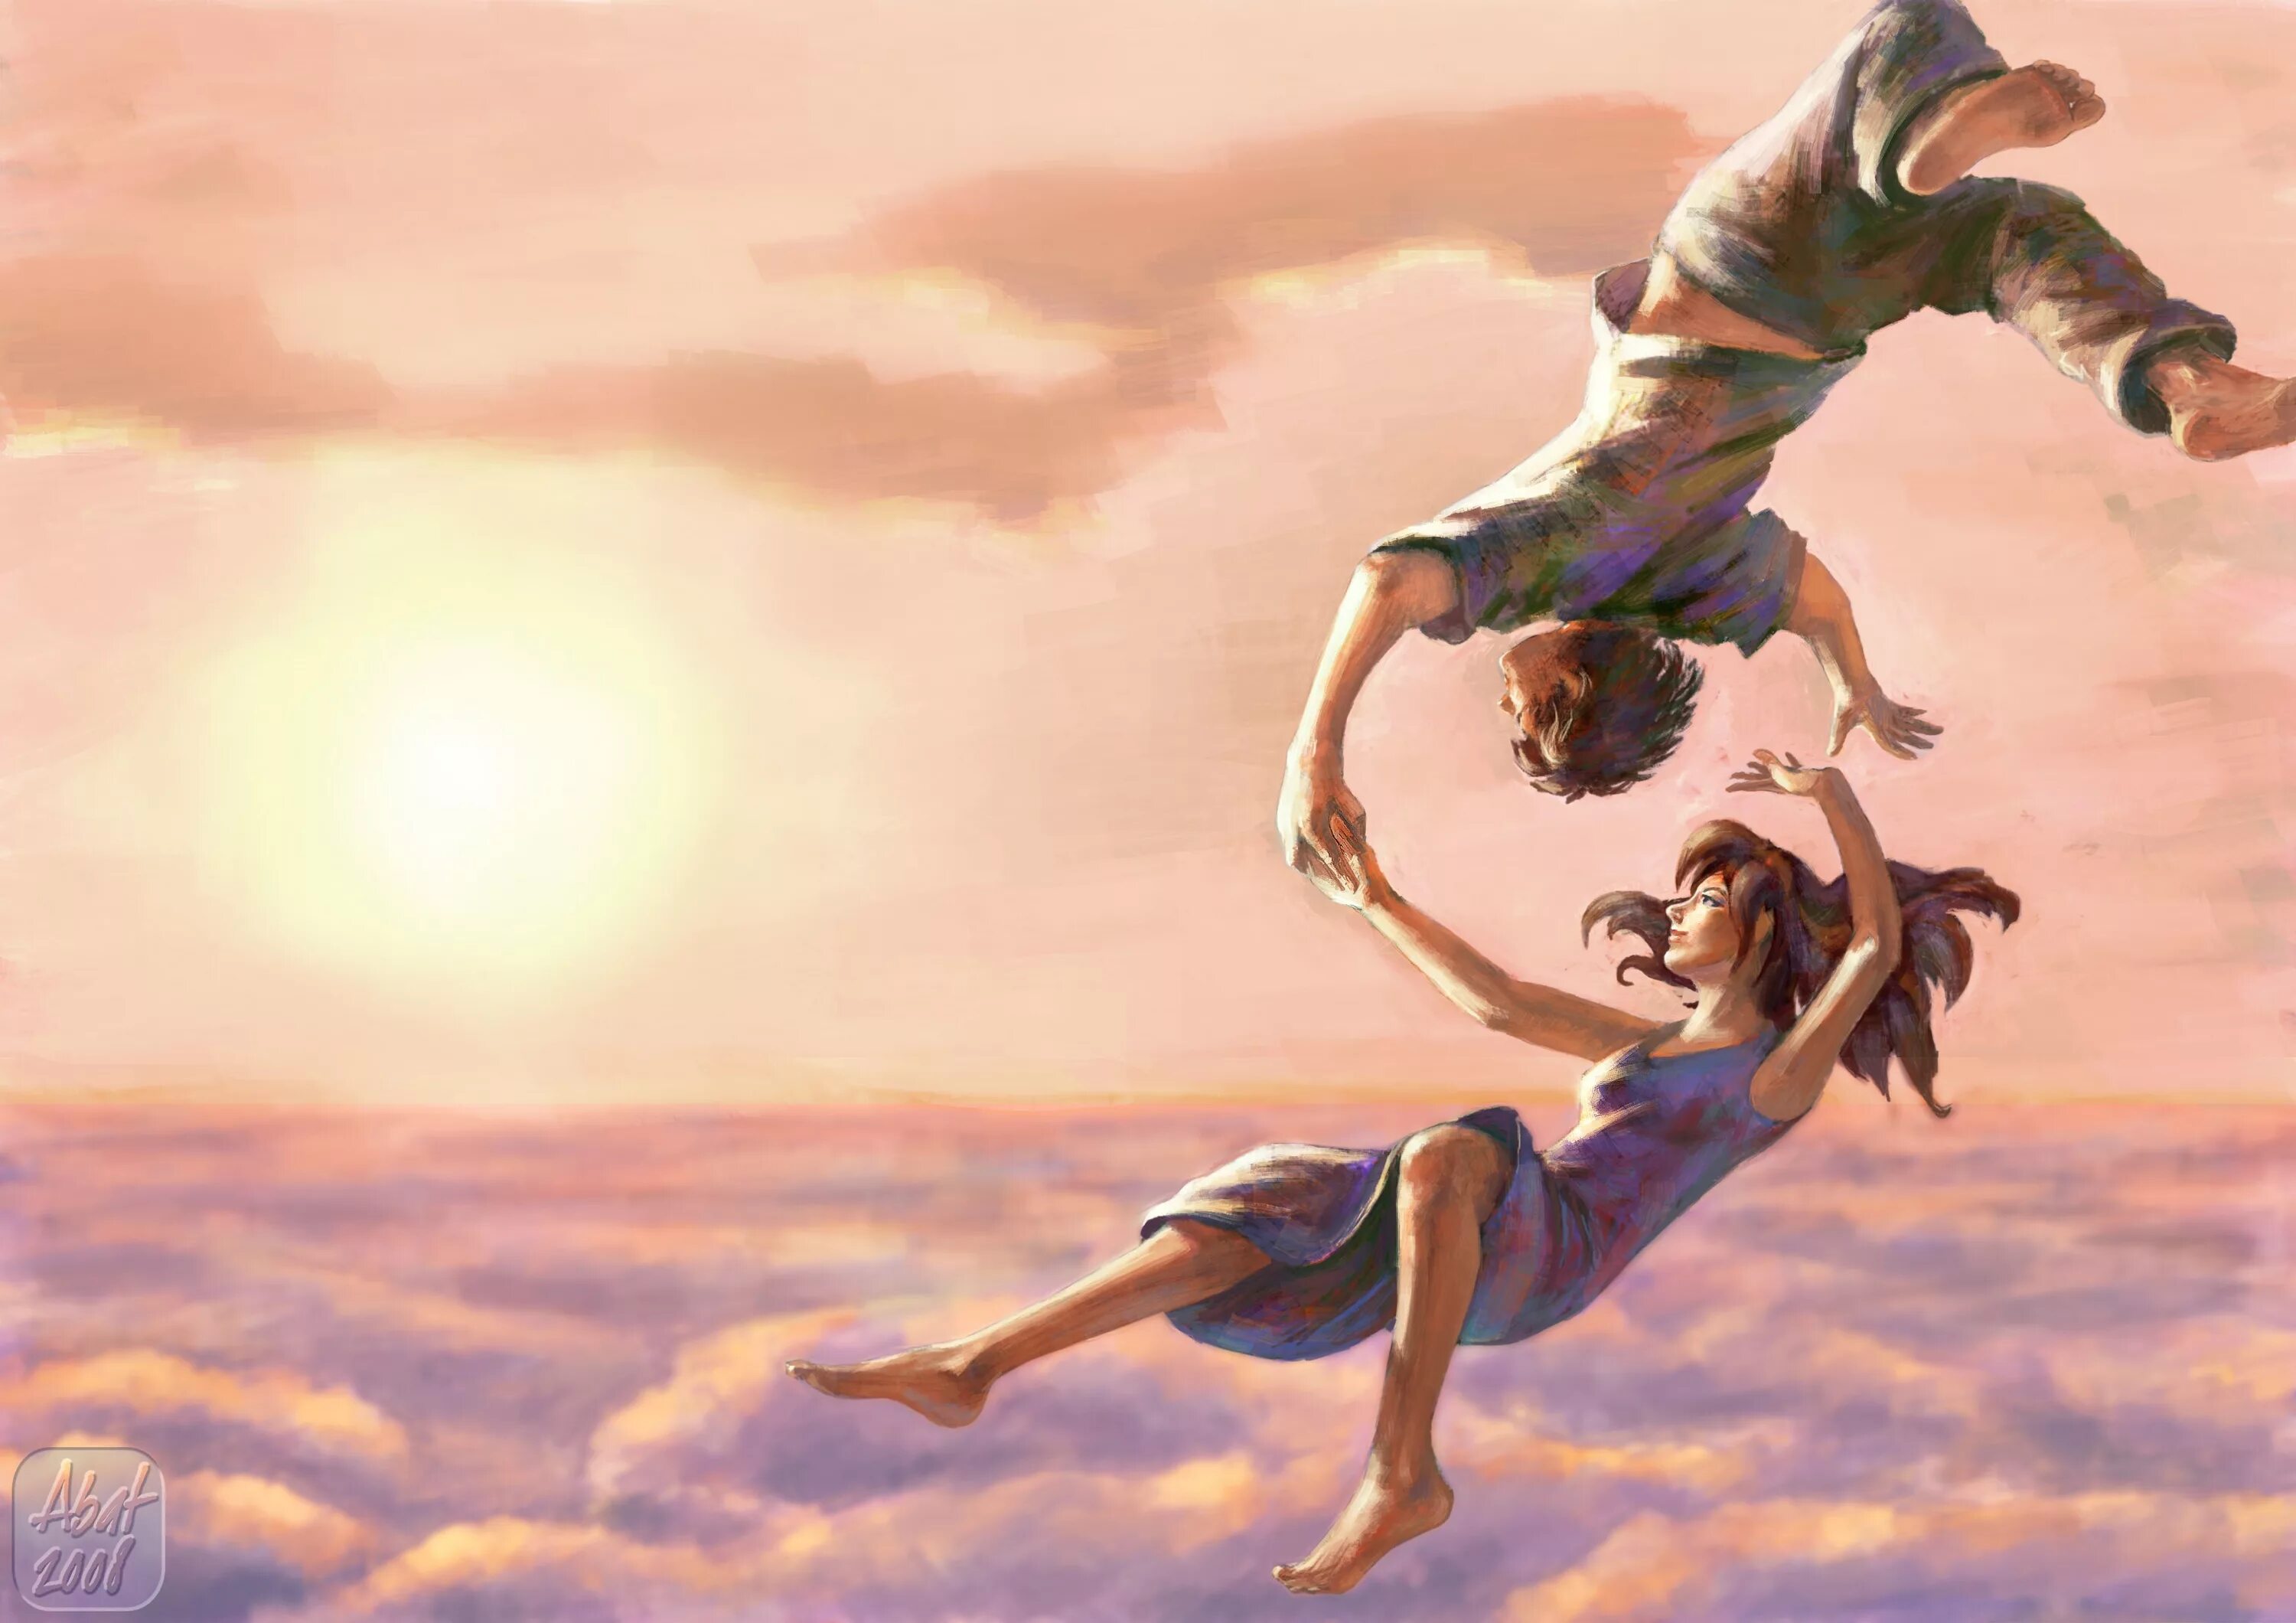 Счастье доверие. Девушка в прыжке. Картина счастье. Красивые иллюстрации. Полет души.